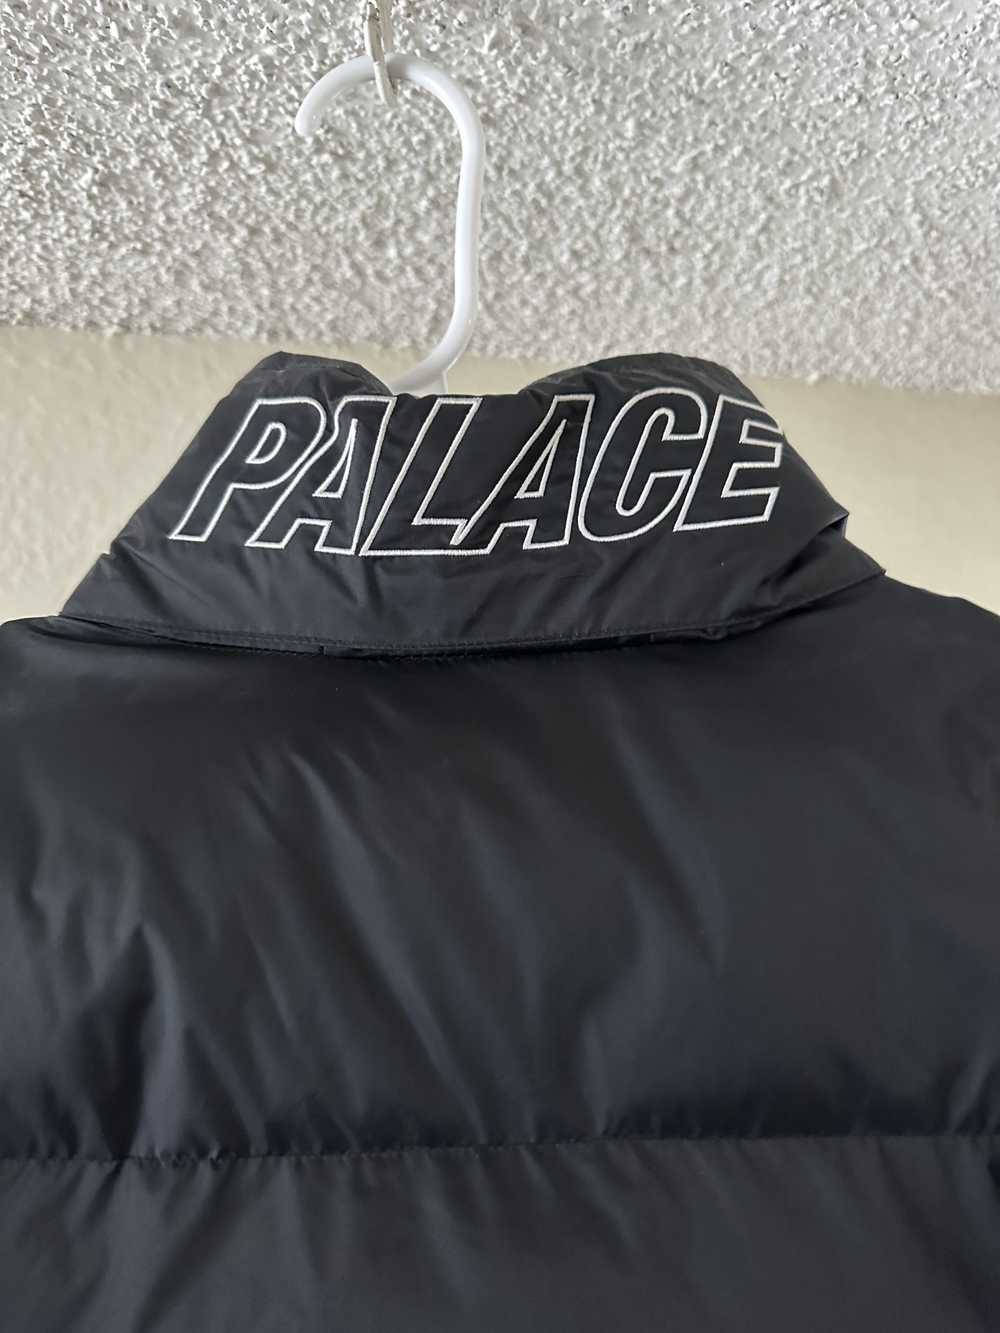 Palace Palace half zip puffa - image 5